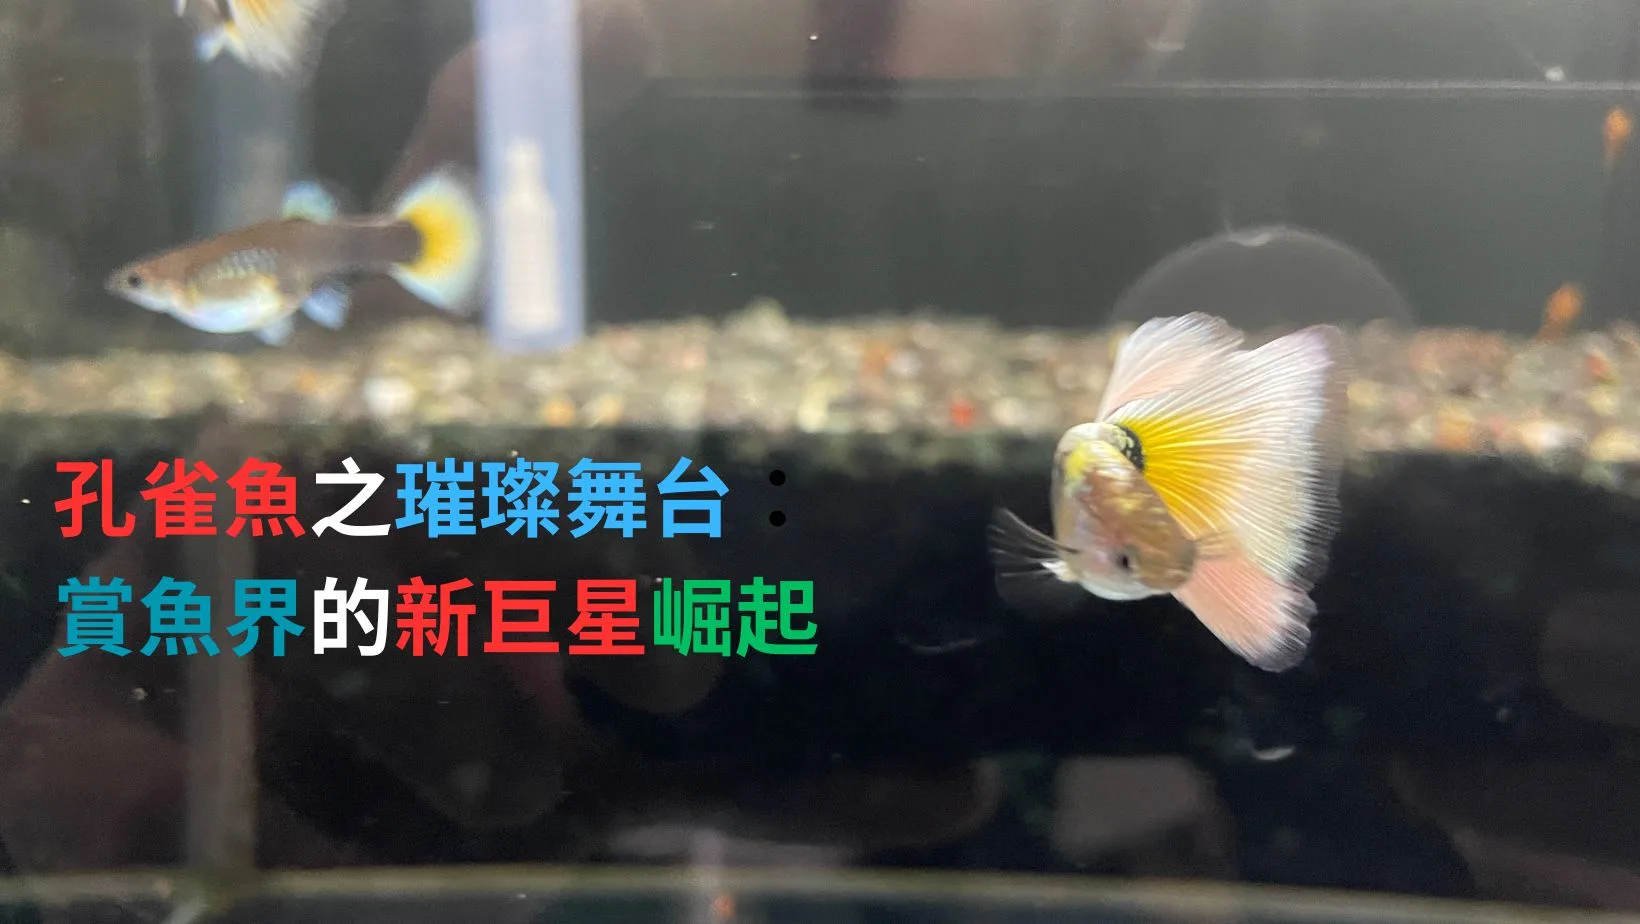 孔雀魚達人呂安仕 養出世界冠軍觀賞魚